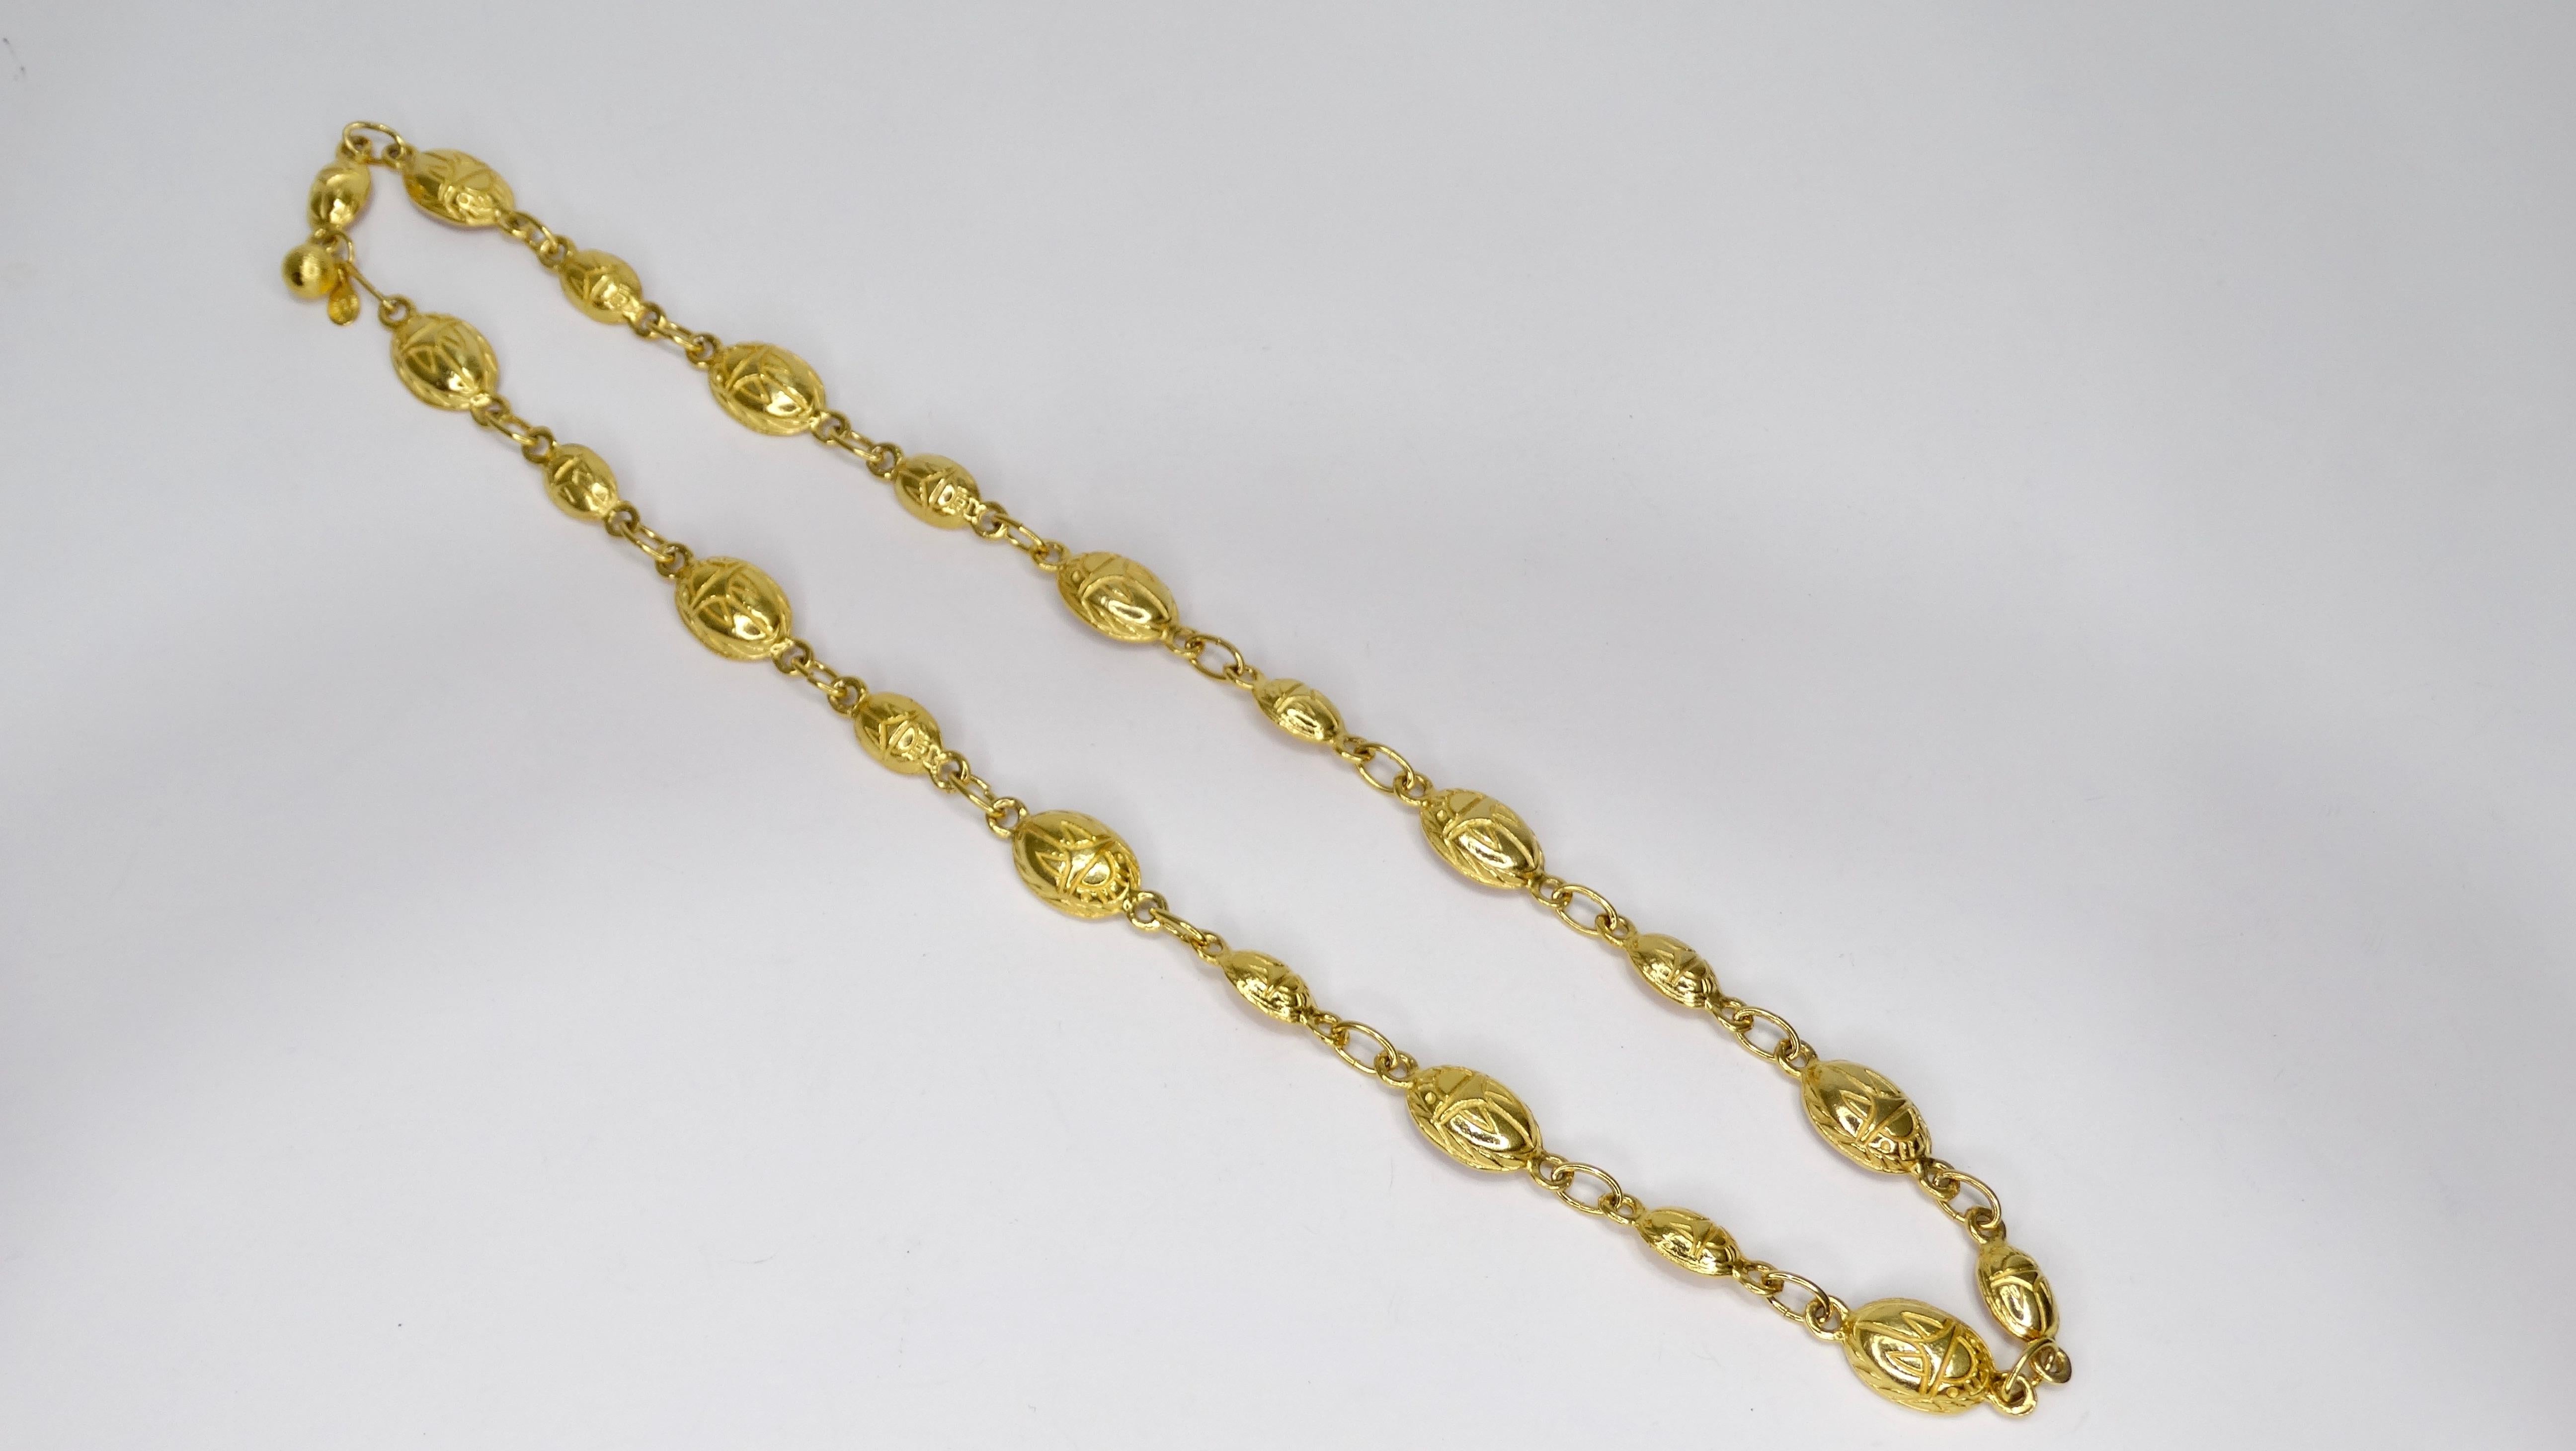 Erstaunlich Vintage Kenneth J Lane Halskette! CIRCA 1980er Jahre, diese goldfarbene Halskette zeigt Skarabäus-Käfer, die auf jedes gewölbte ovale Glied geprägt sind. Hakenverschluss und signiert KJL. Diese ägyptische Halskette ist ein echtes